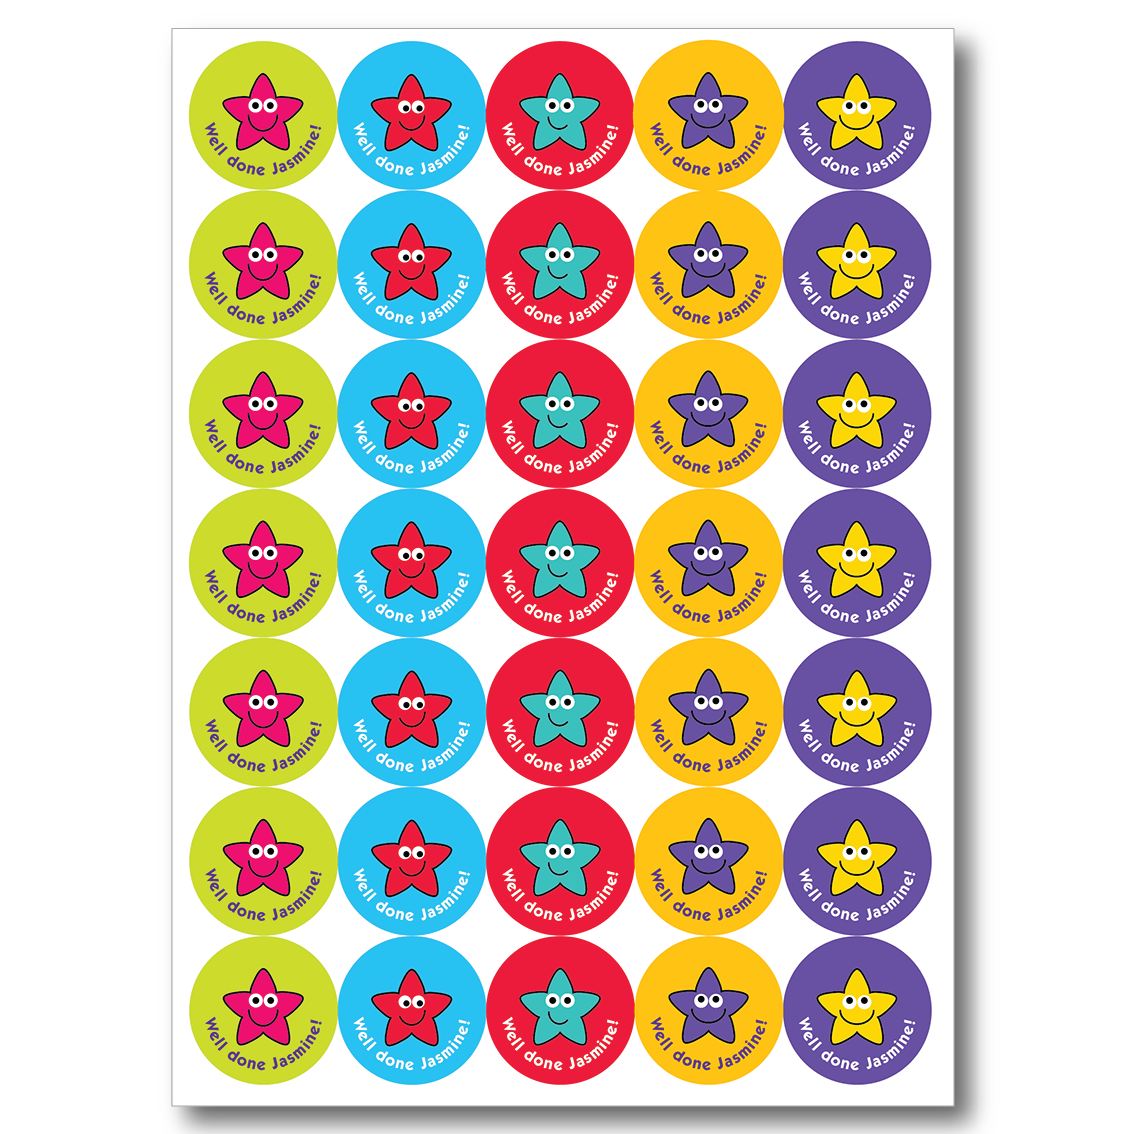 Smiley Stars Reward Stickers - Super star!